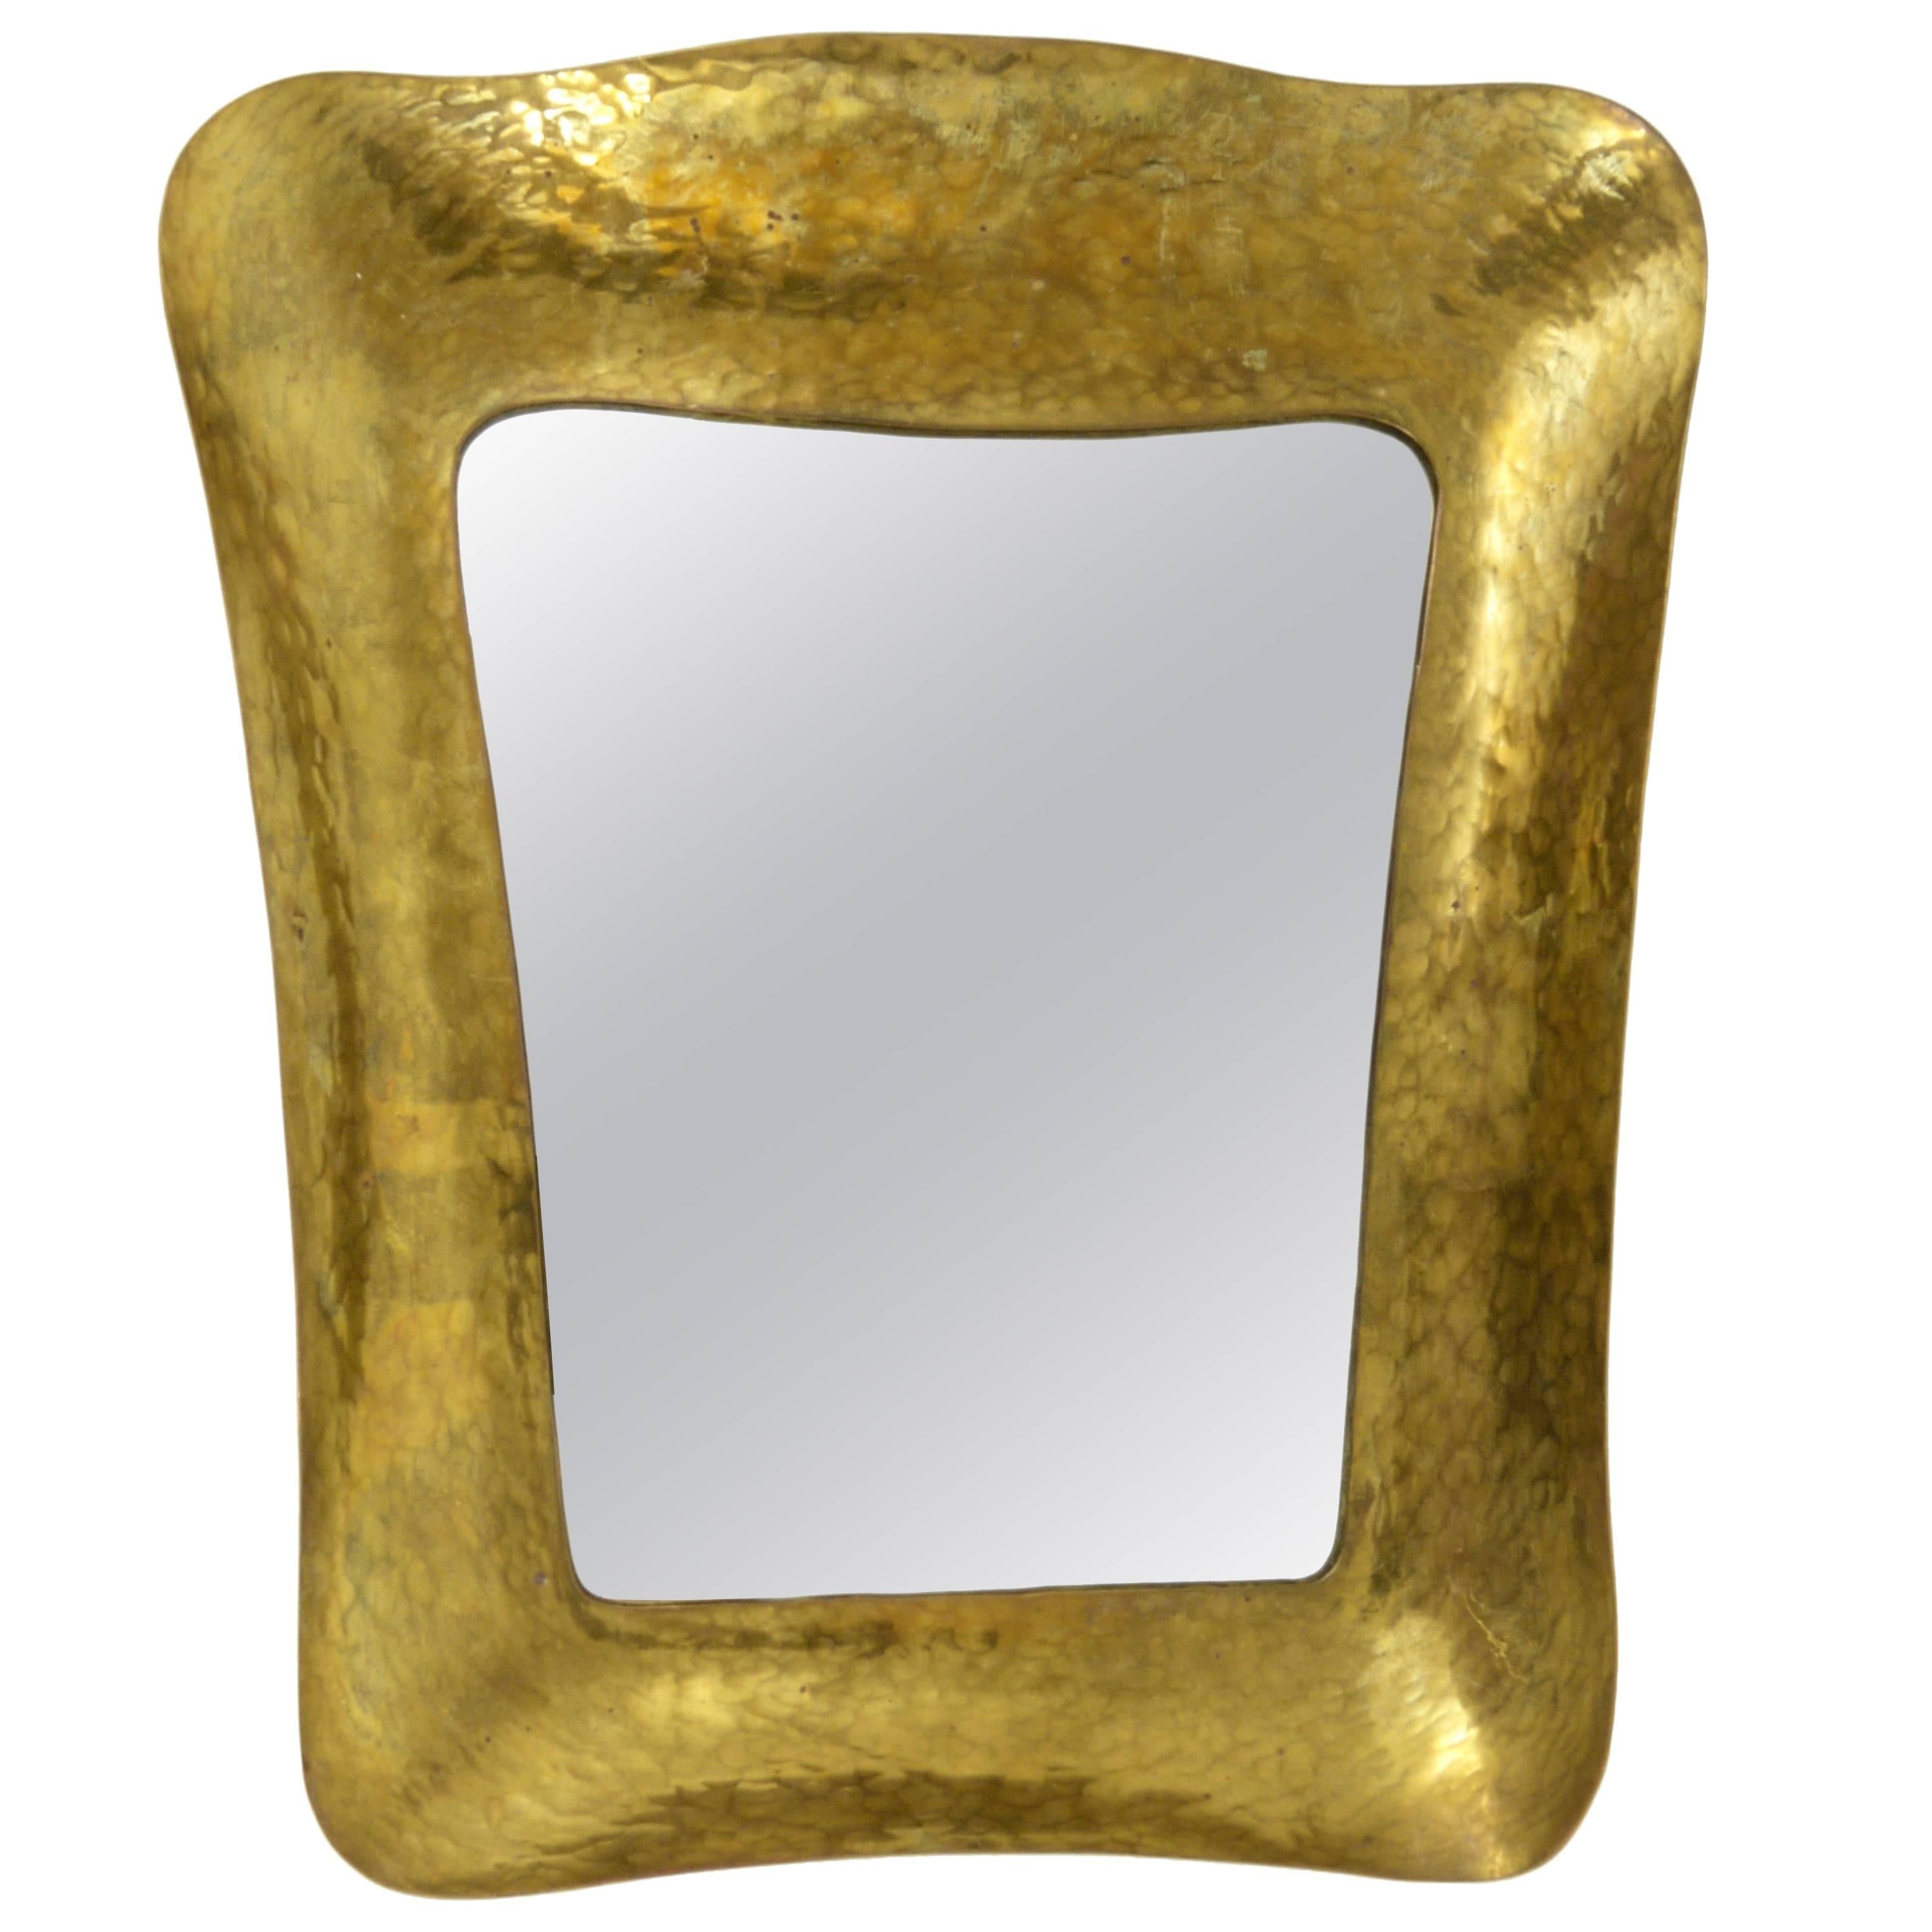 Hammered Modernist Brass Mirror, Austria, 1950s